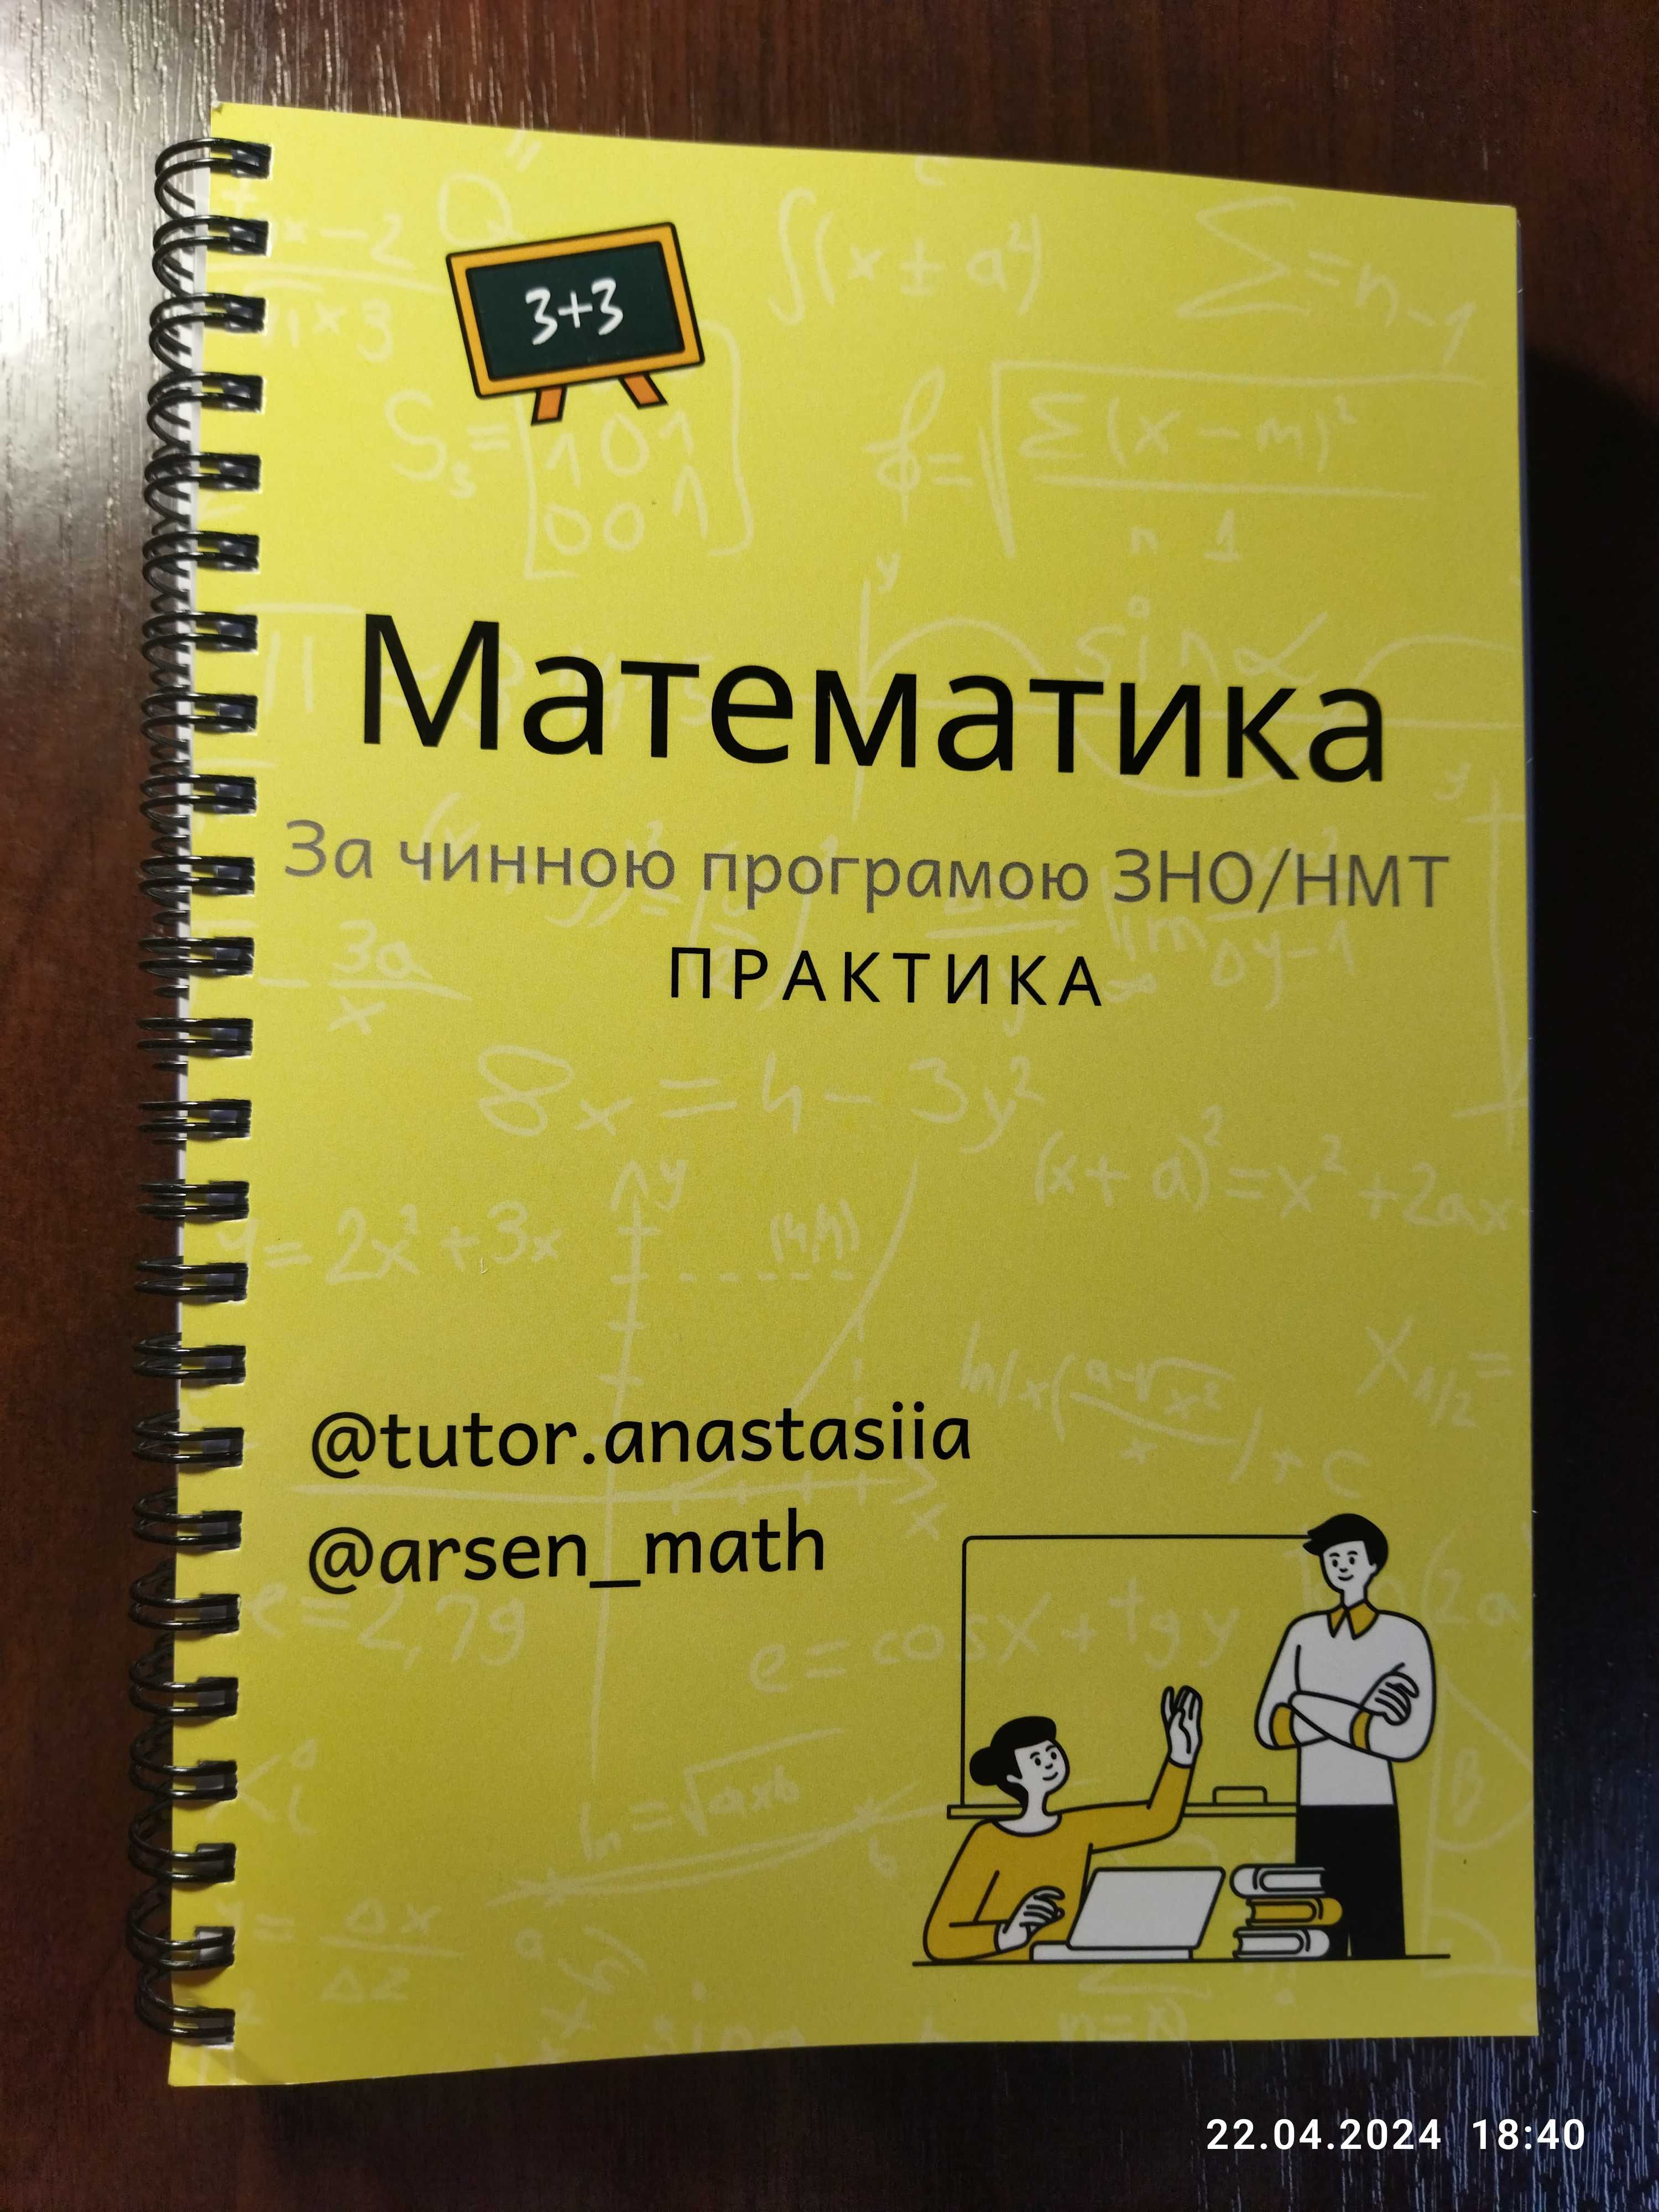 Підручники для підготовки до НМТ з математики